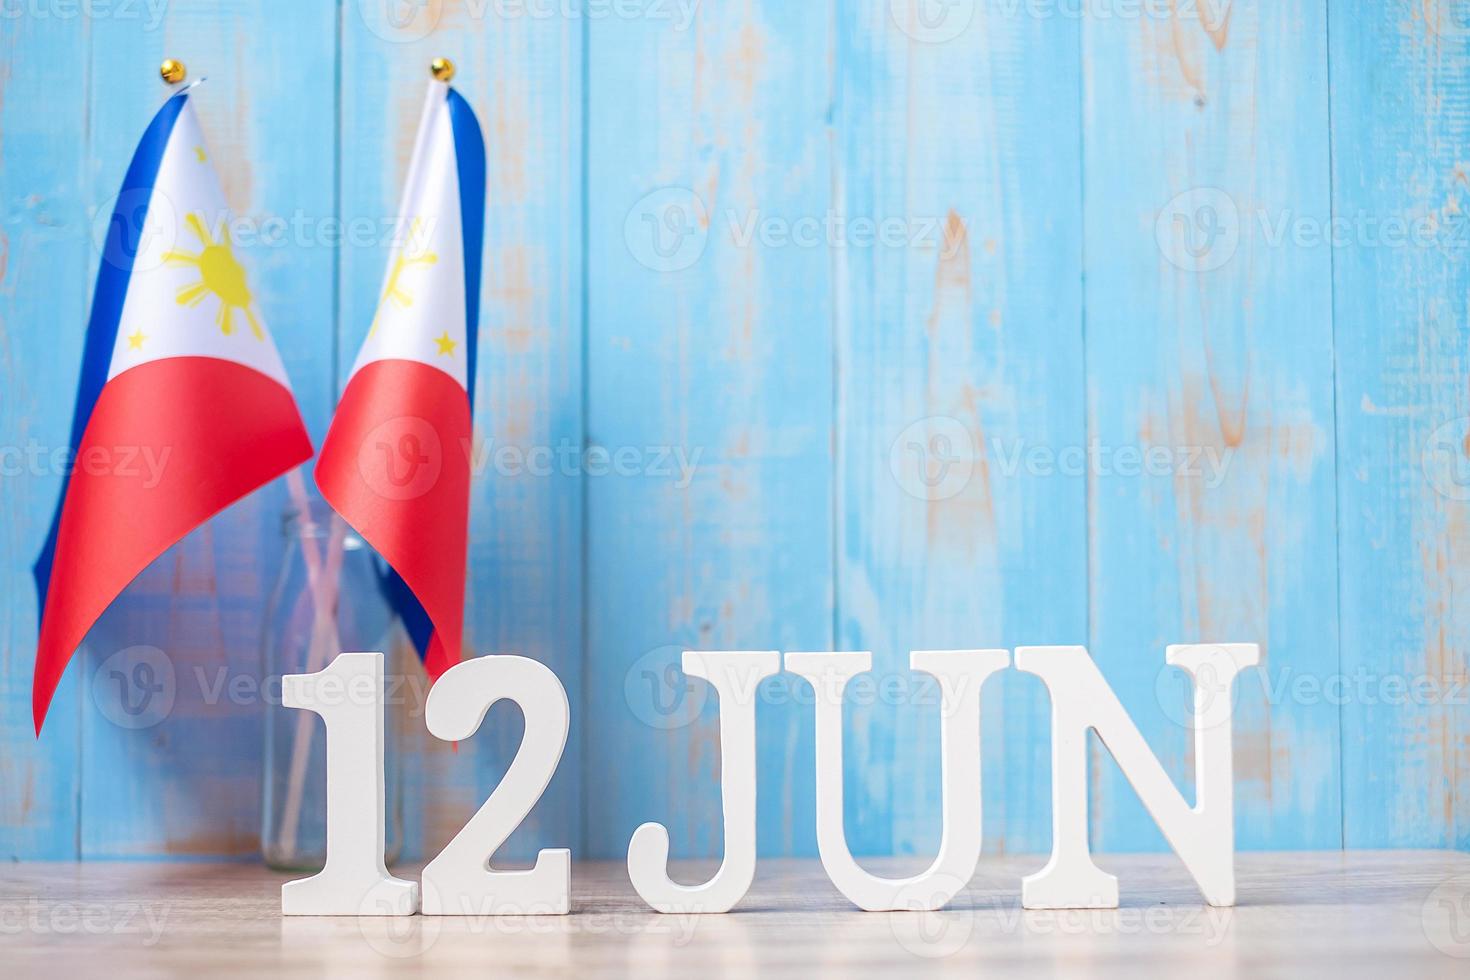 houten tekst van 12 juni met Filippijnse vlaggen. Filippijnse onafhankelijkheidsdag en gelukkige vieringsconcepten foto